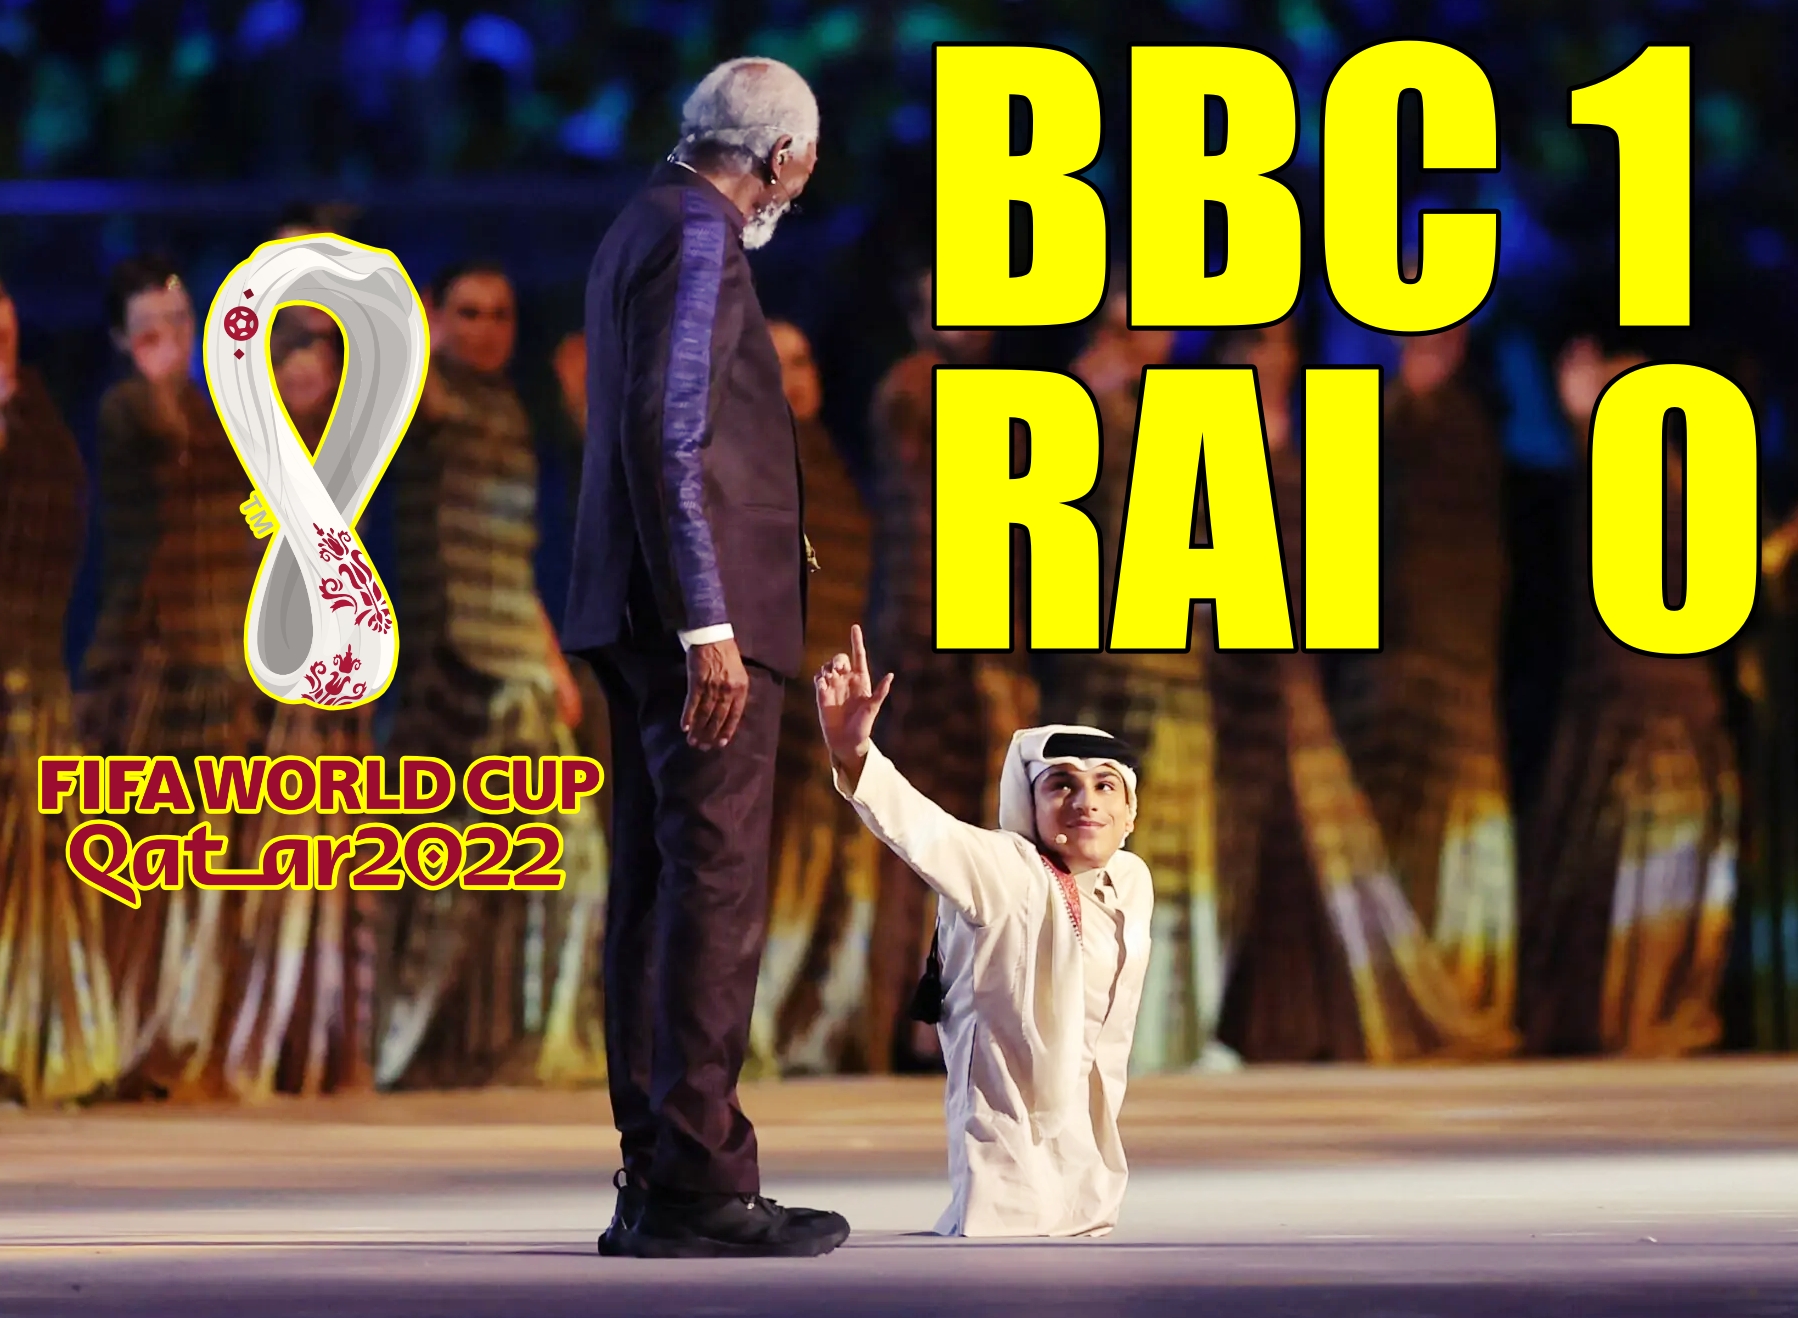 Cerimonia d'apertura dei Mondiali in Qatar, con Morgan Freeman